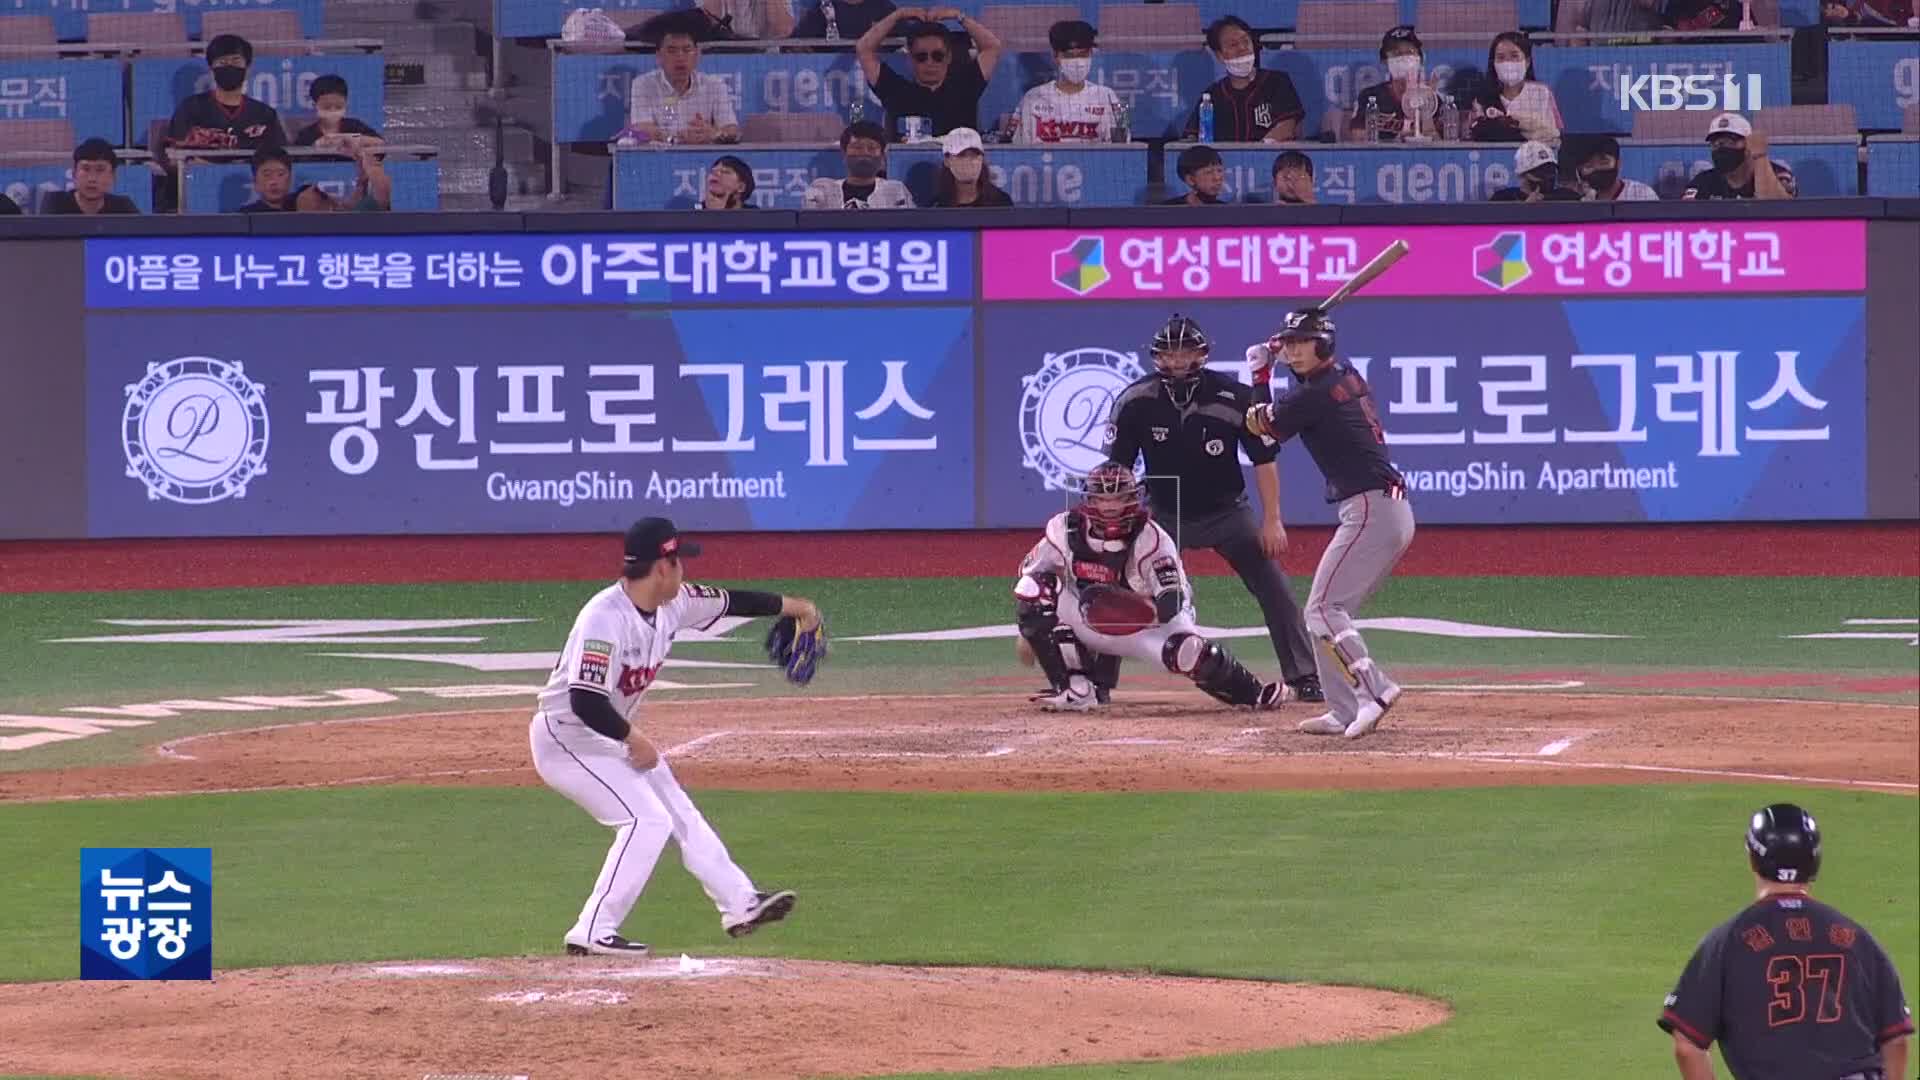 [주요장면] 박병호 빠진 KT, 천적 한화에 승리!